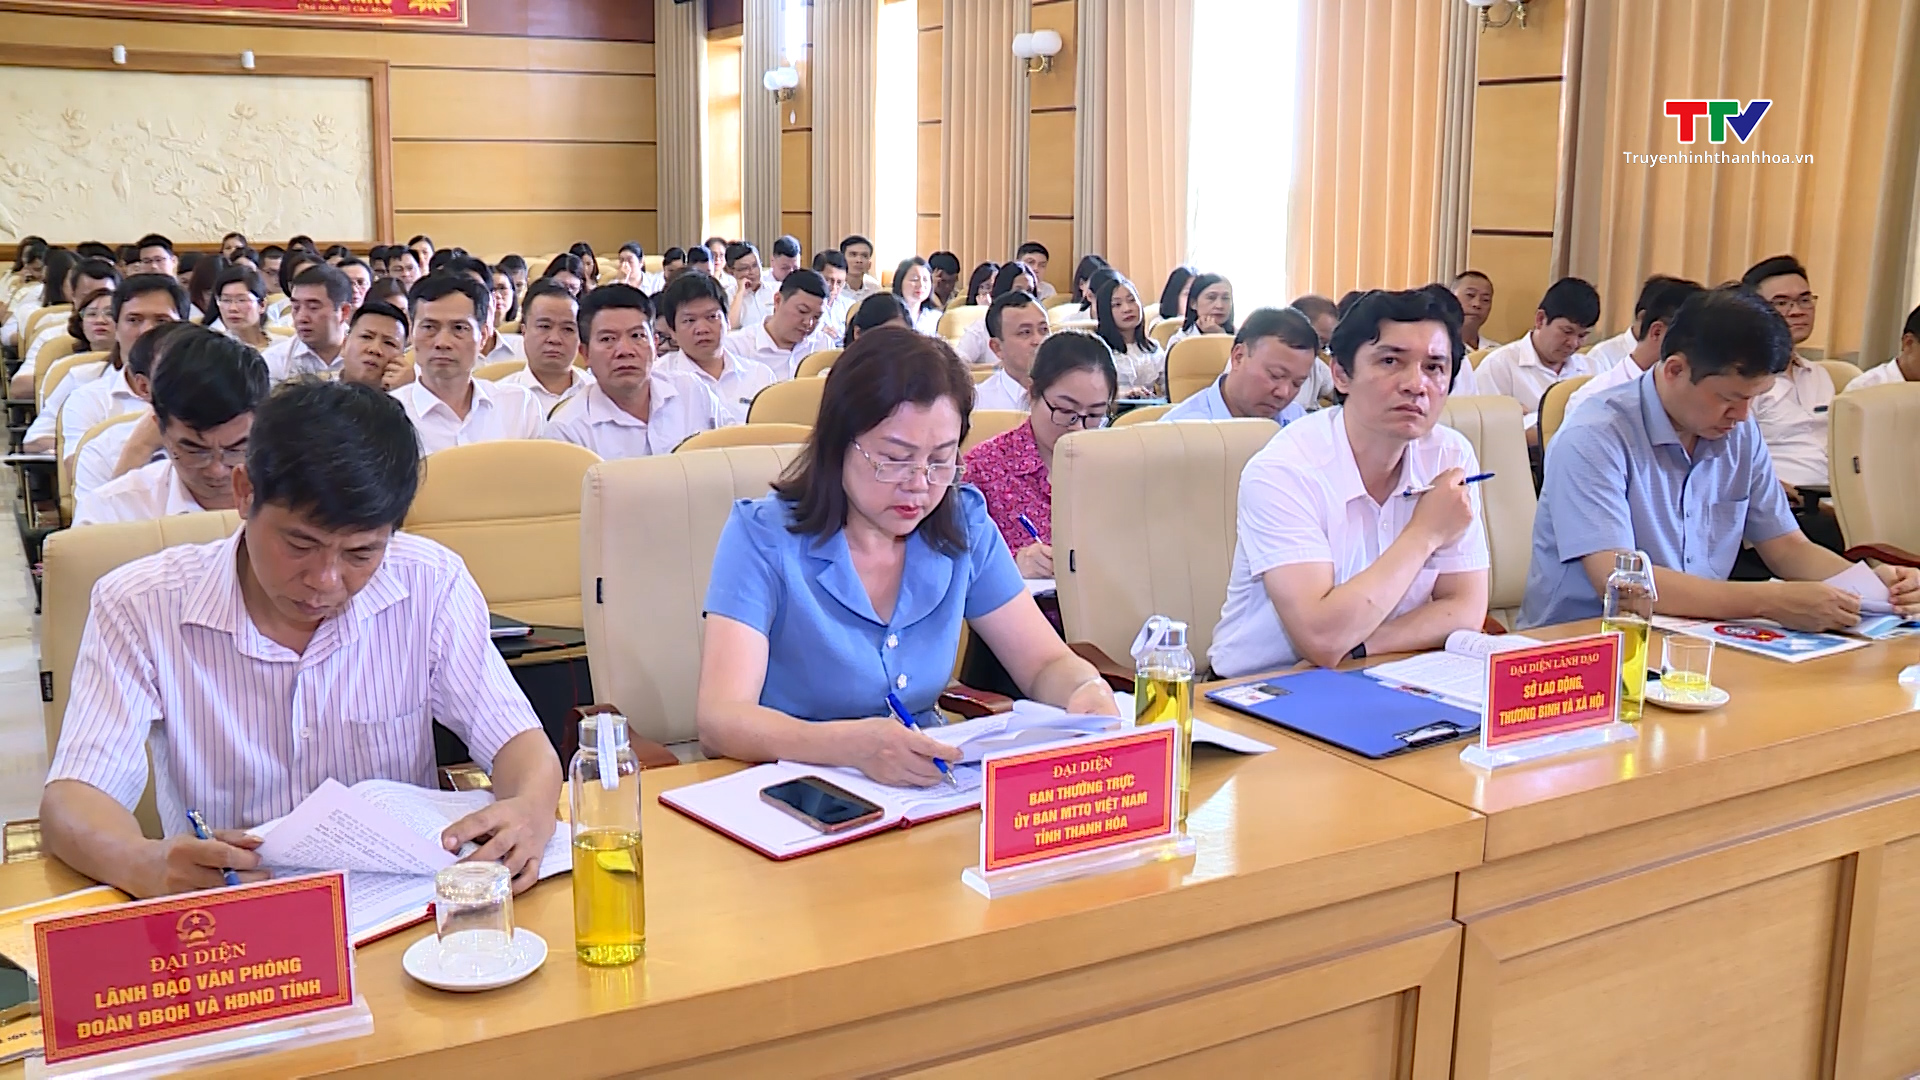 Đại biểu Quốc hội tỉnh Thanh Hoá tiếp xúc cử tri theo chuyên đề với cử tri bảo hiểm xã hội tỉnh Thanh Hoá- Ảnh 2.